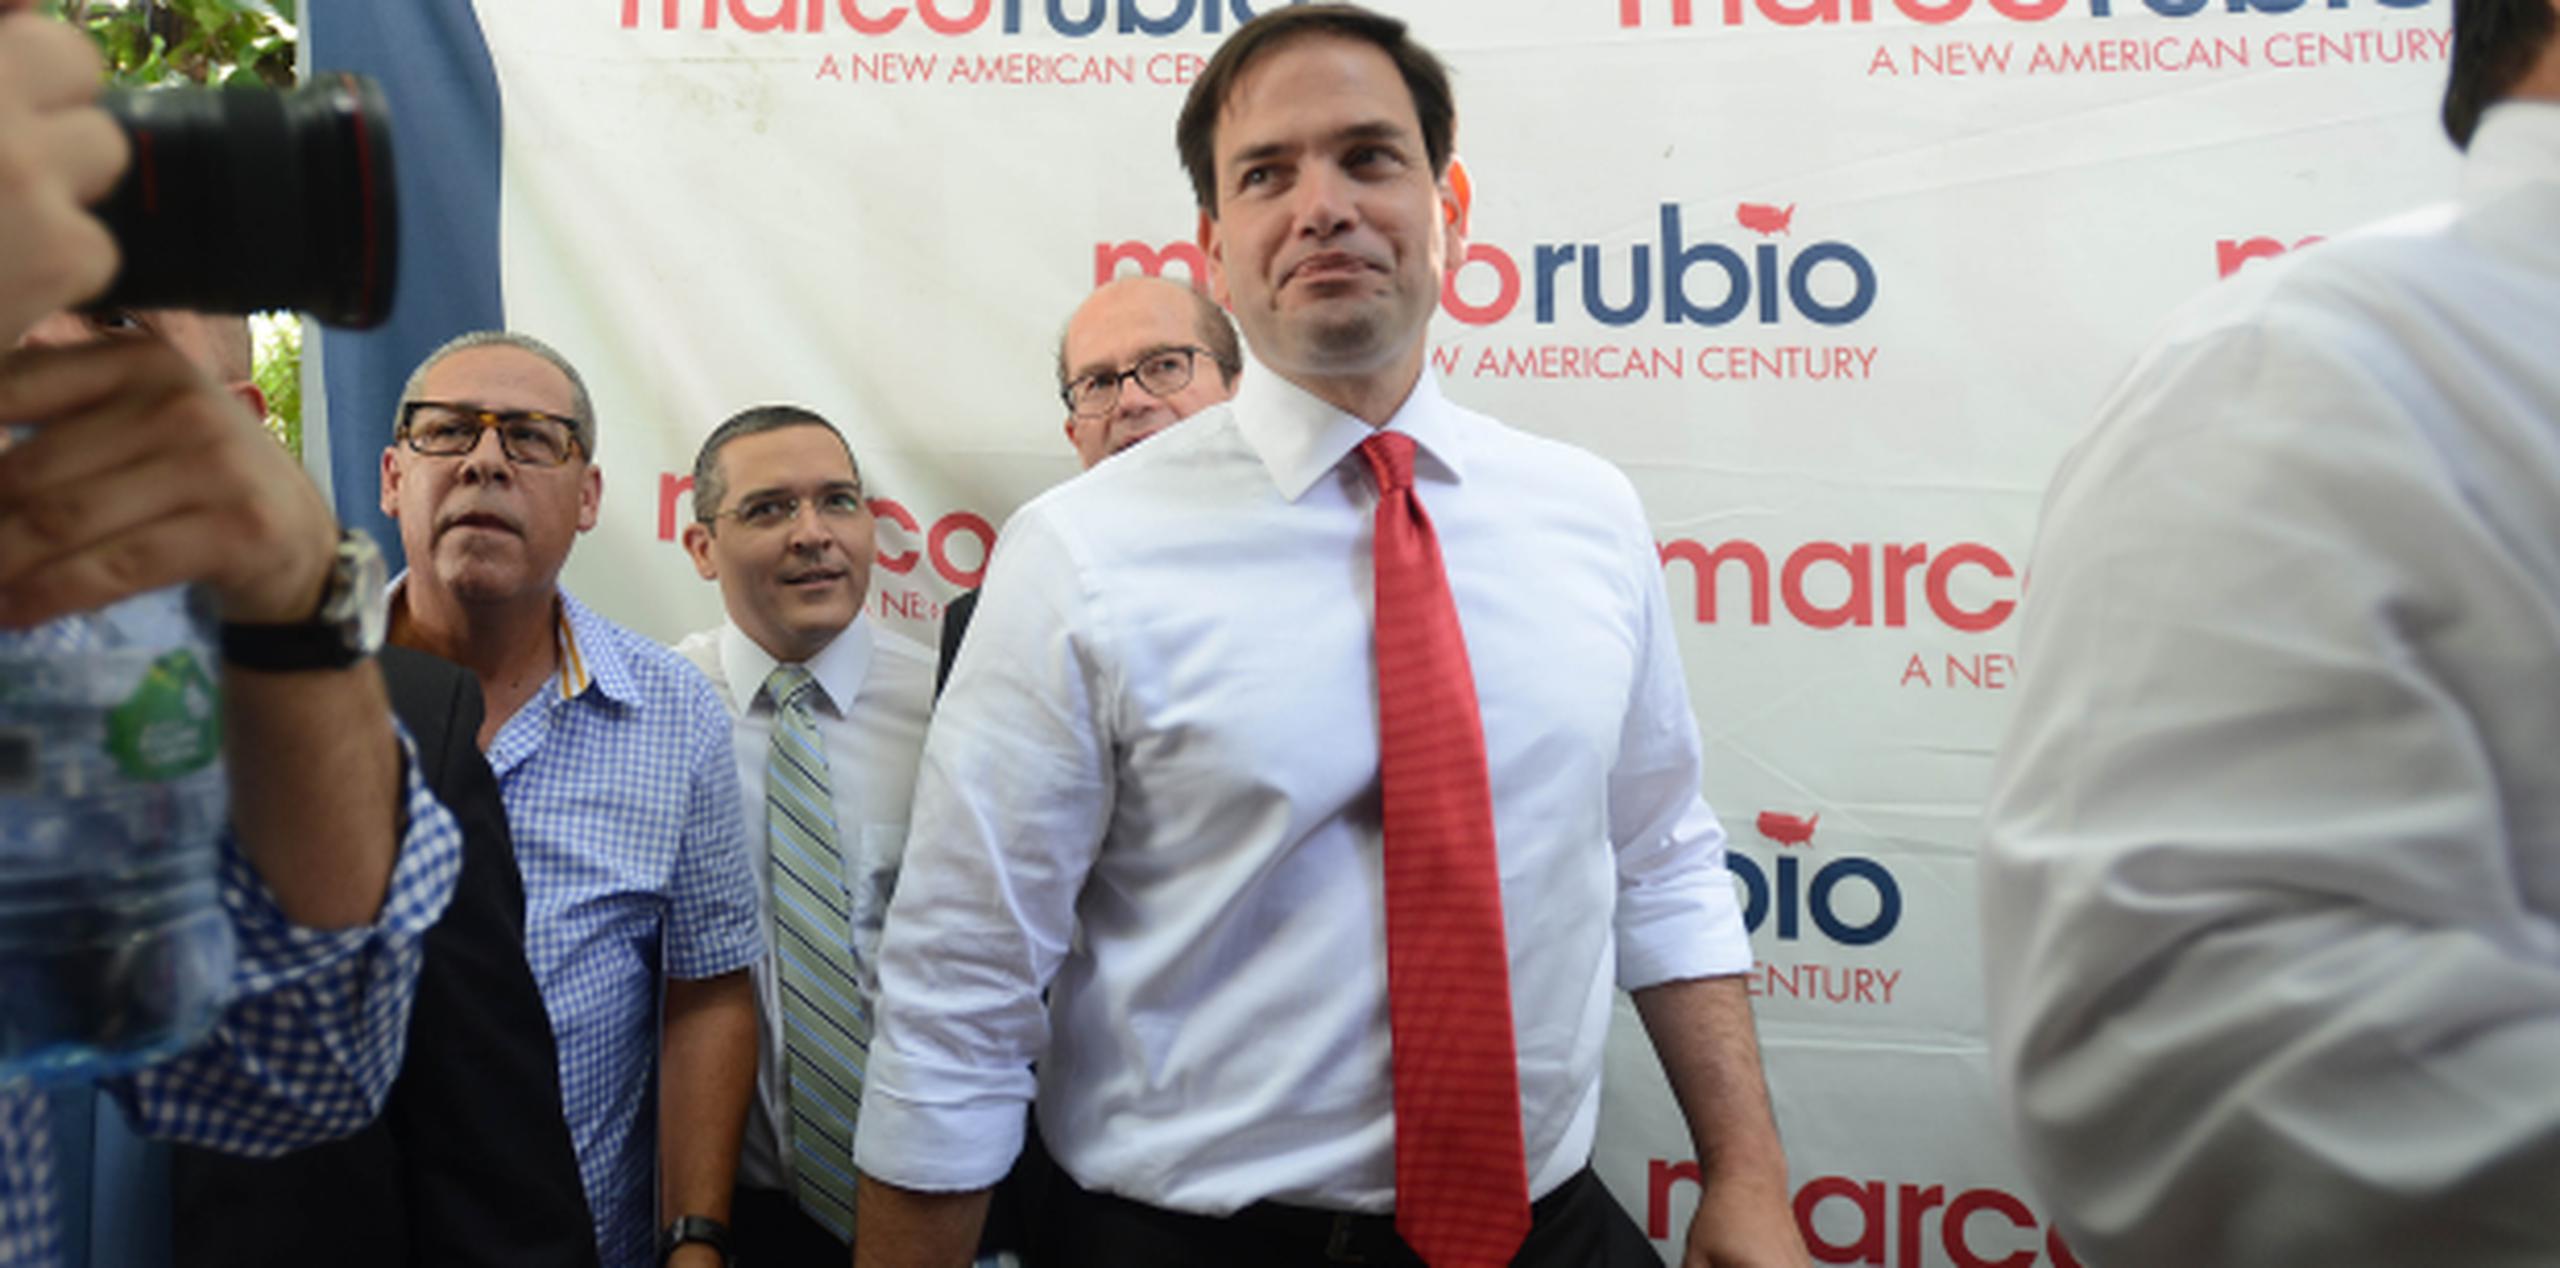 Rubio asistirá a un evento de recaudación de fondos y se reunirá con sus seguidores en San Juan. (ana.abruna@gfrmedia.com)